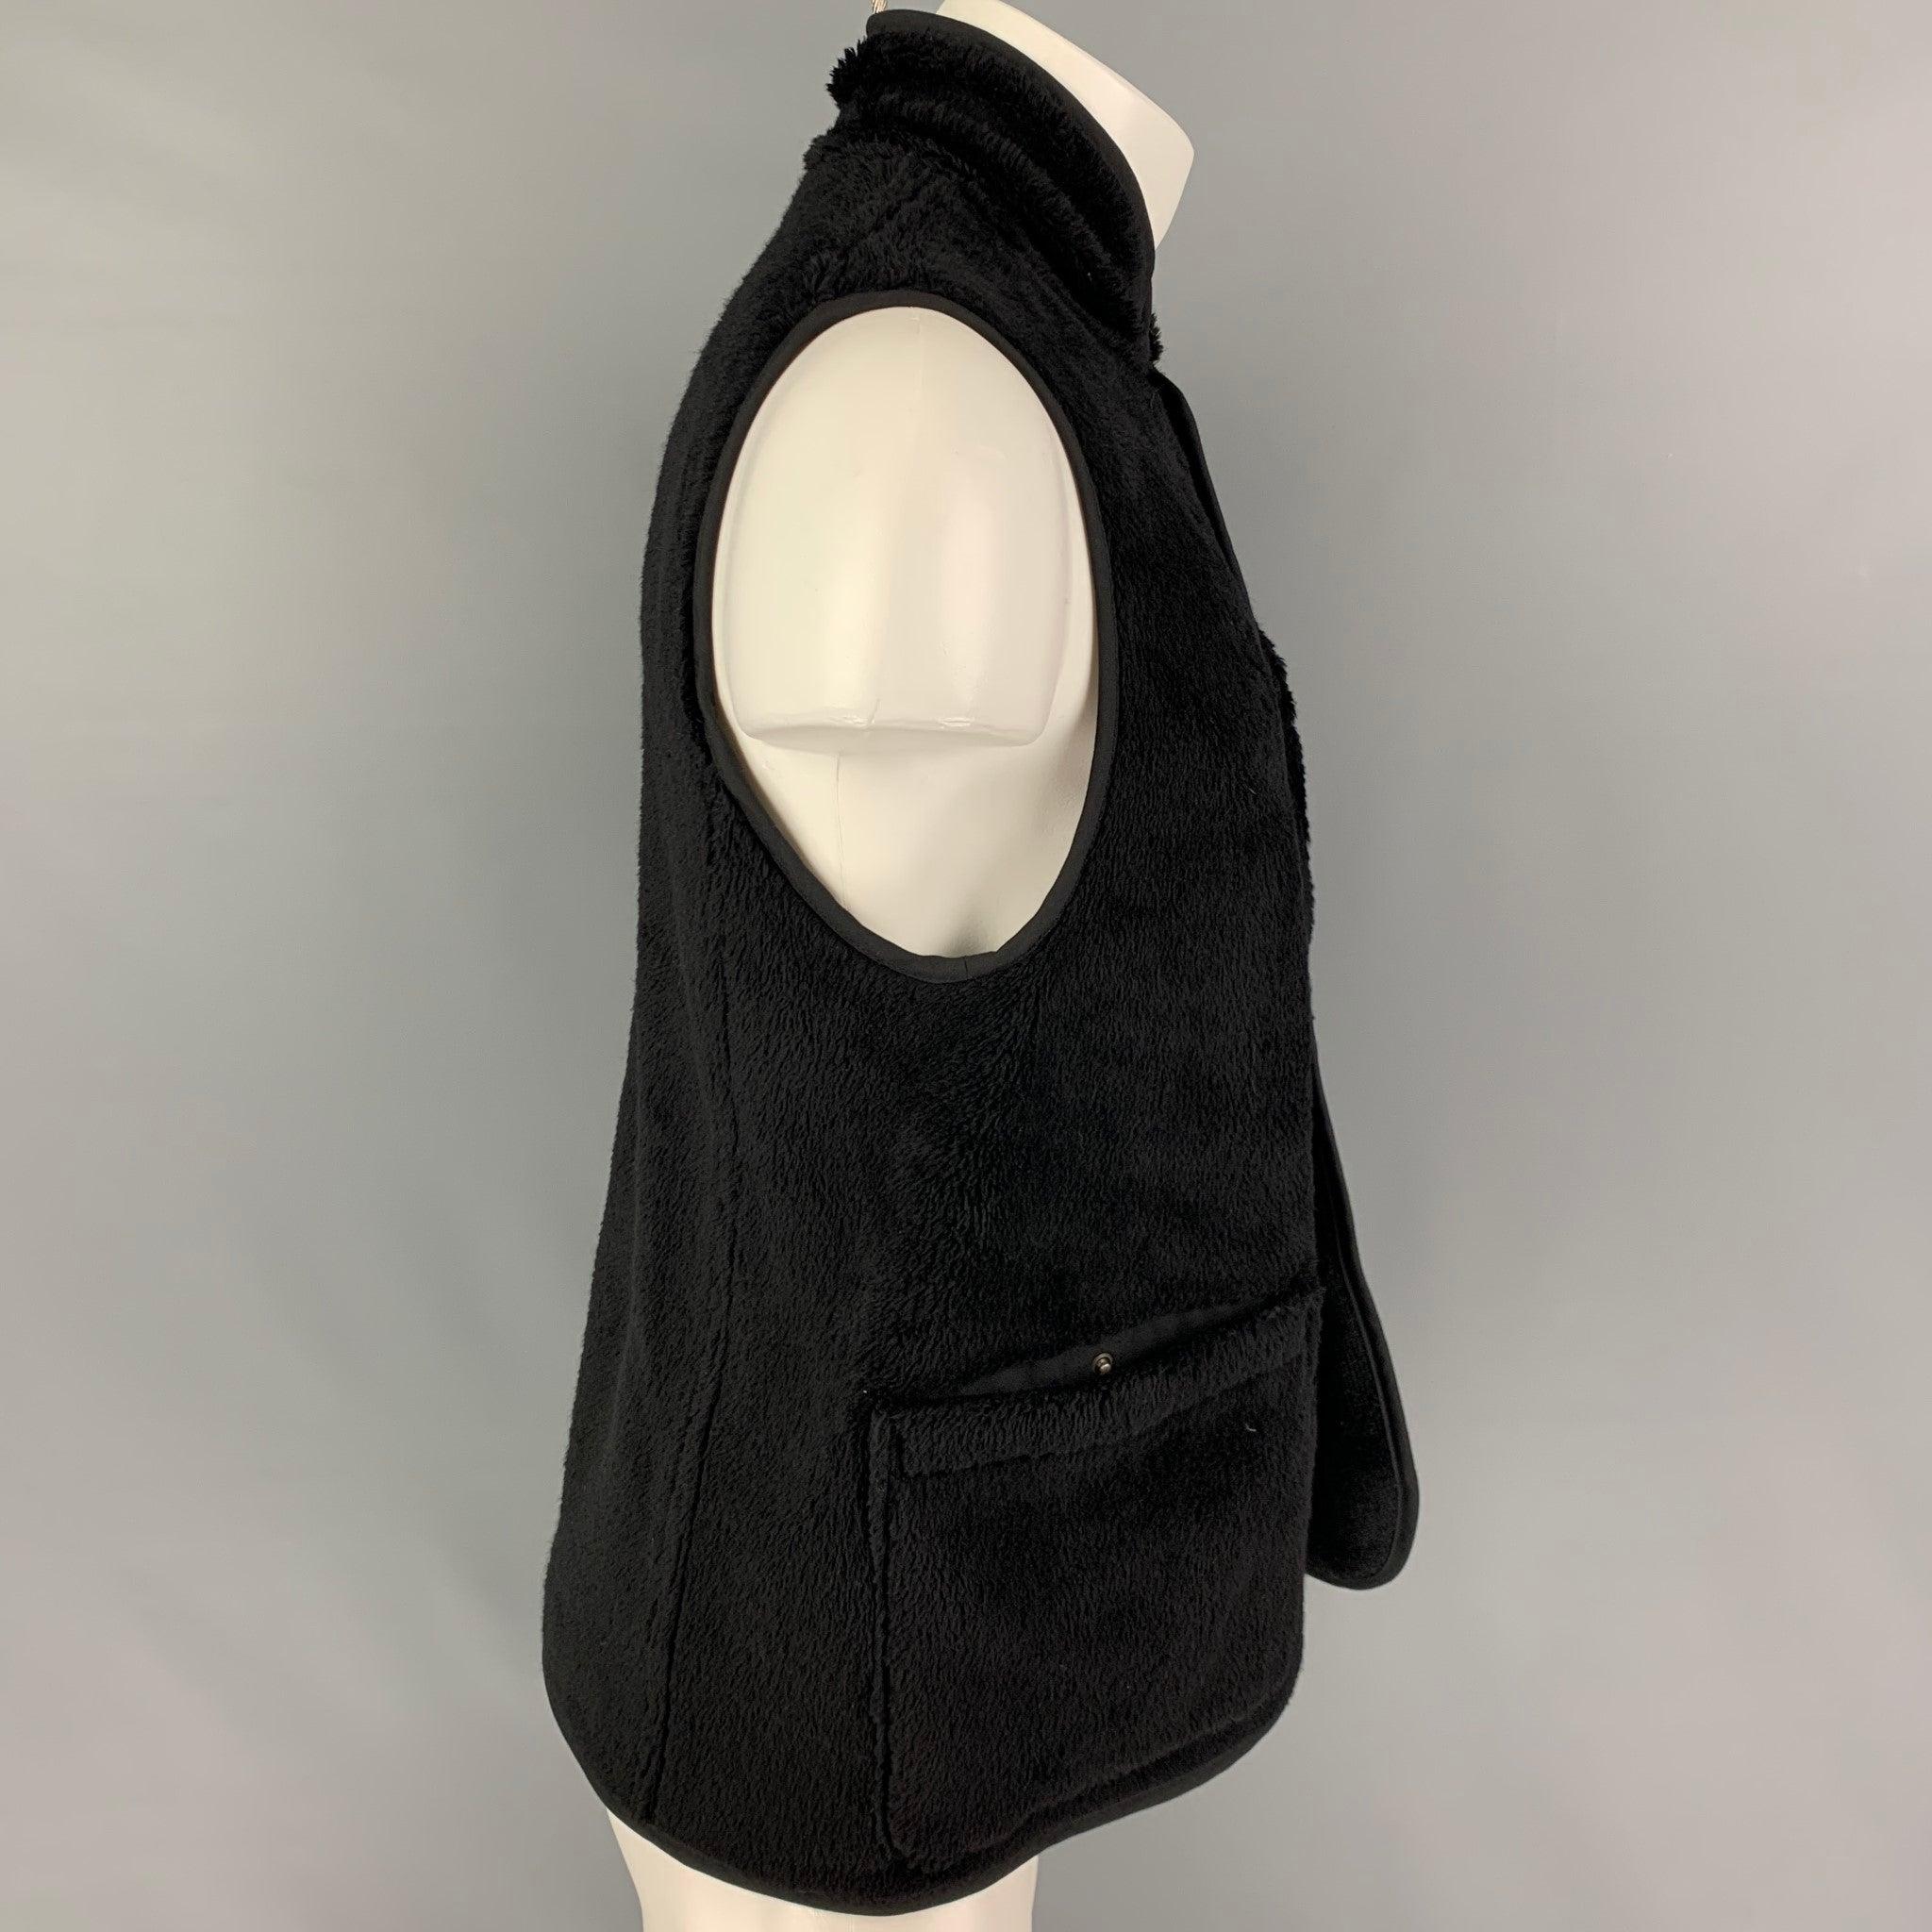 Le gilet VISVIM SPORT se présente dans un lainage boa-fleece texturé noir avec un style réversible, des poches plaquées, un col montant et une fermeture boutonnée. Fabriqué au Japon.
Très bien
Etat d'occasion. Étiquette de tissu enlevée.  

Marqué :